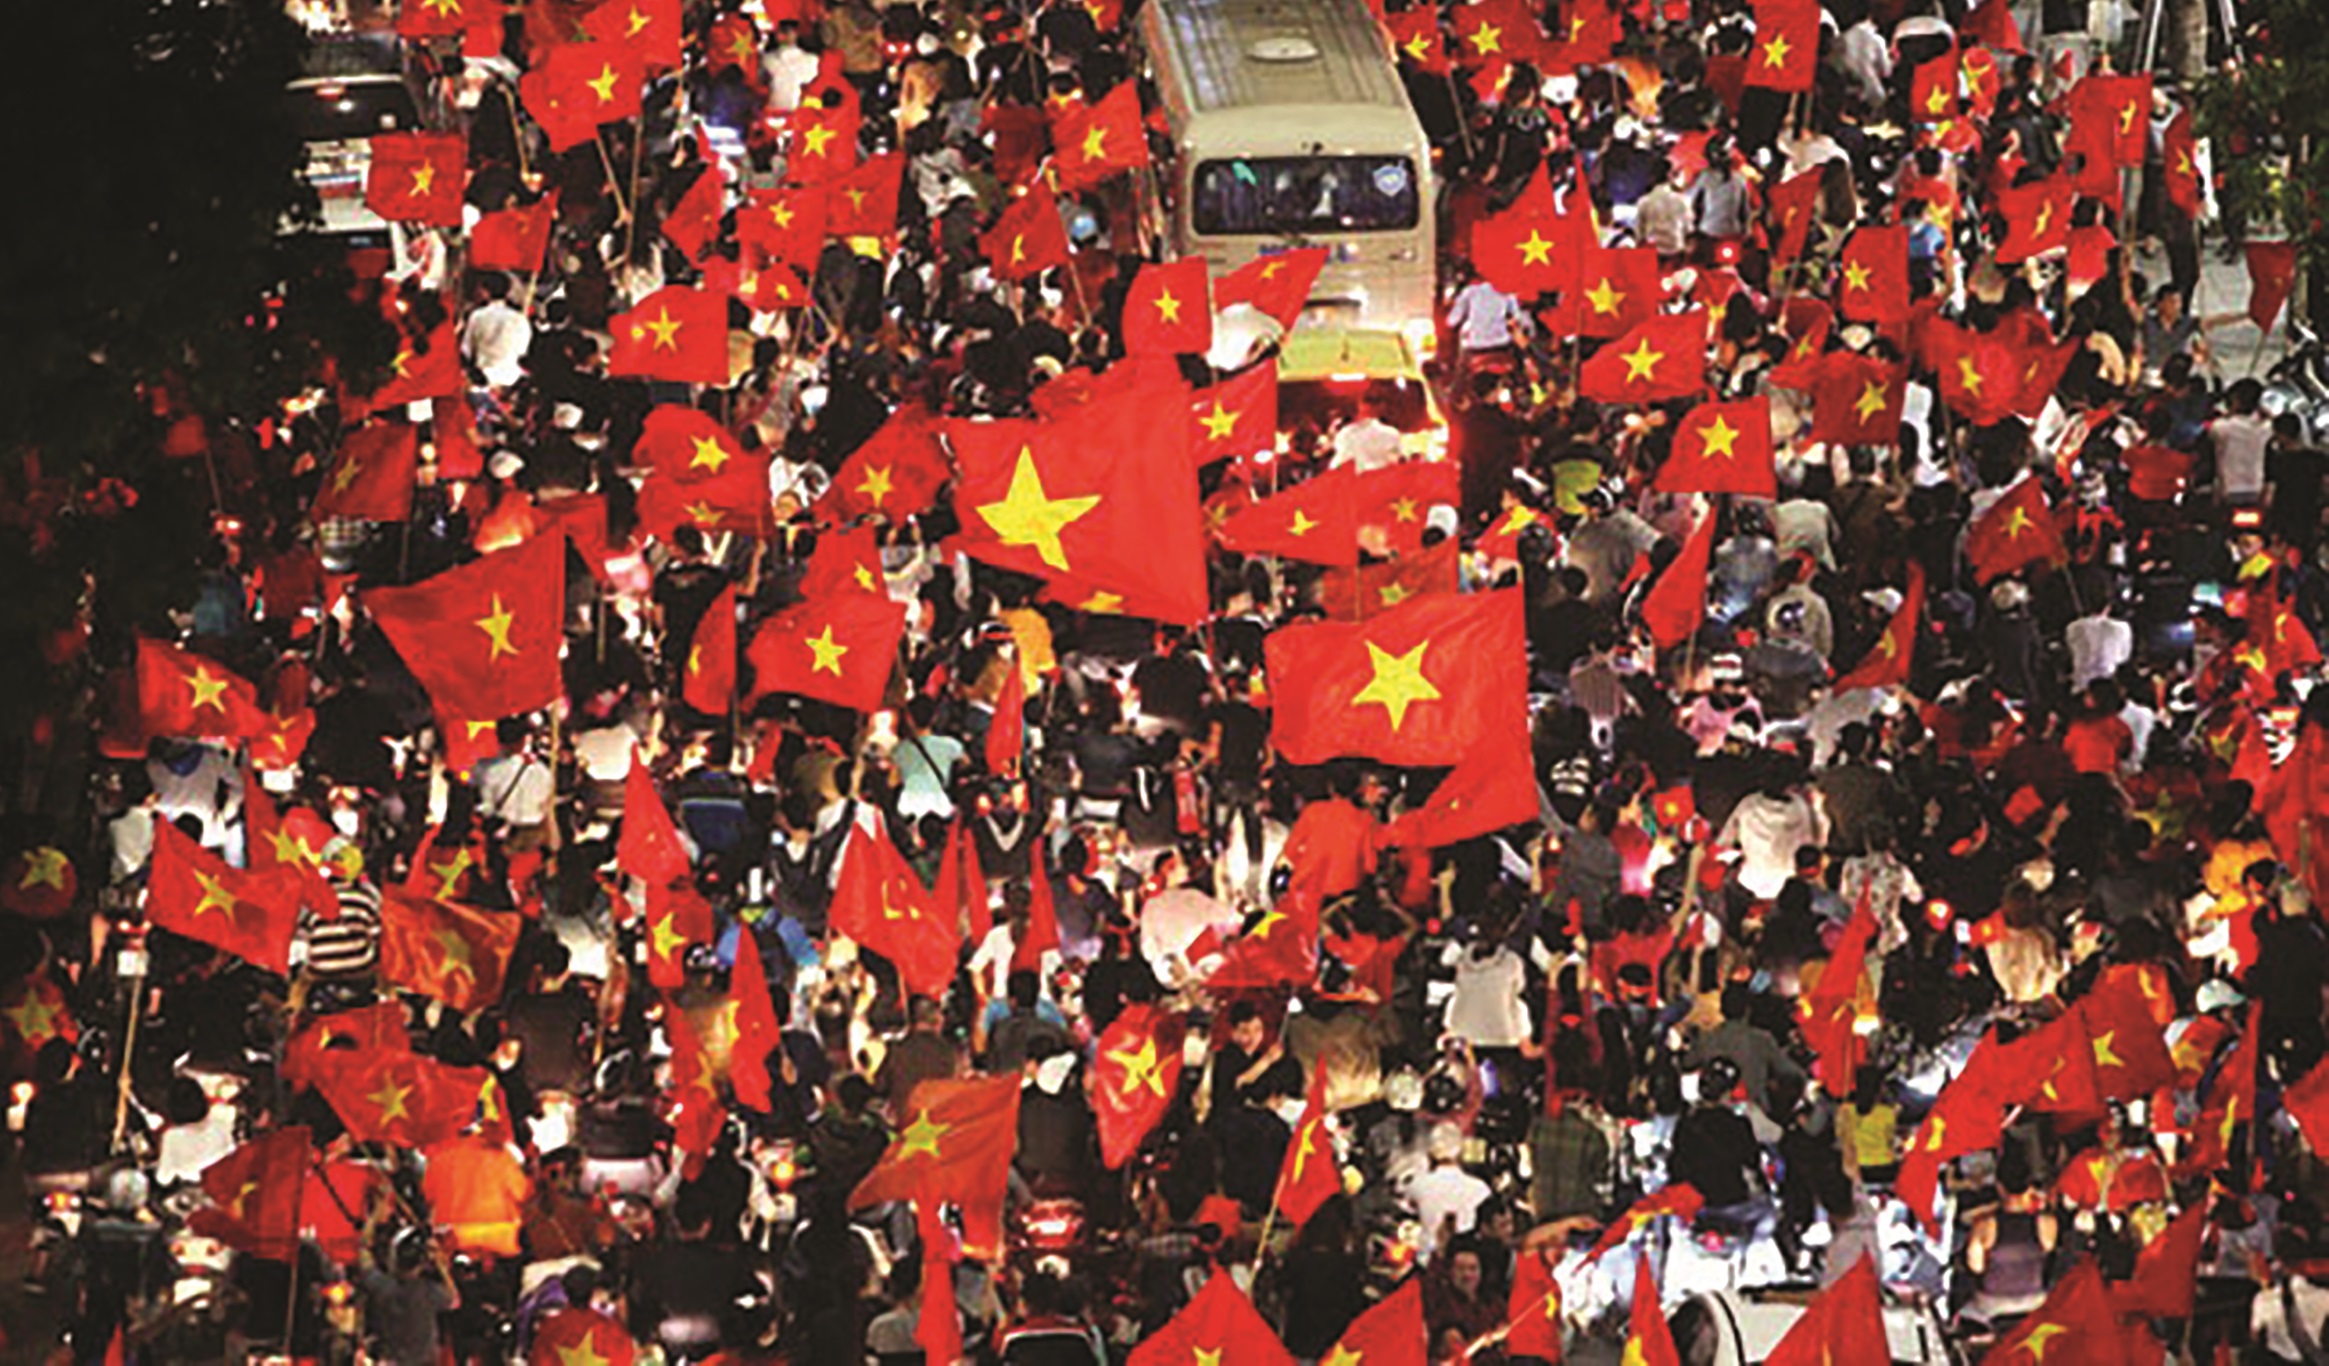 Ảnh Việt Nam ảnh Việt Nam cờ vẻ đẹp trang trọng của lá cờ đỏ sao vàng